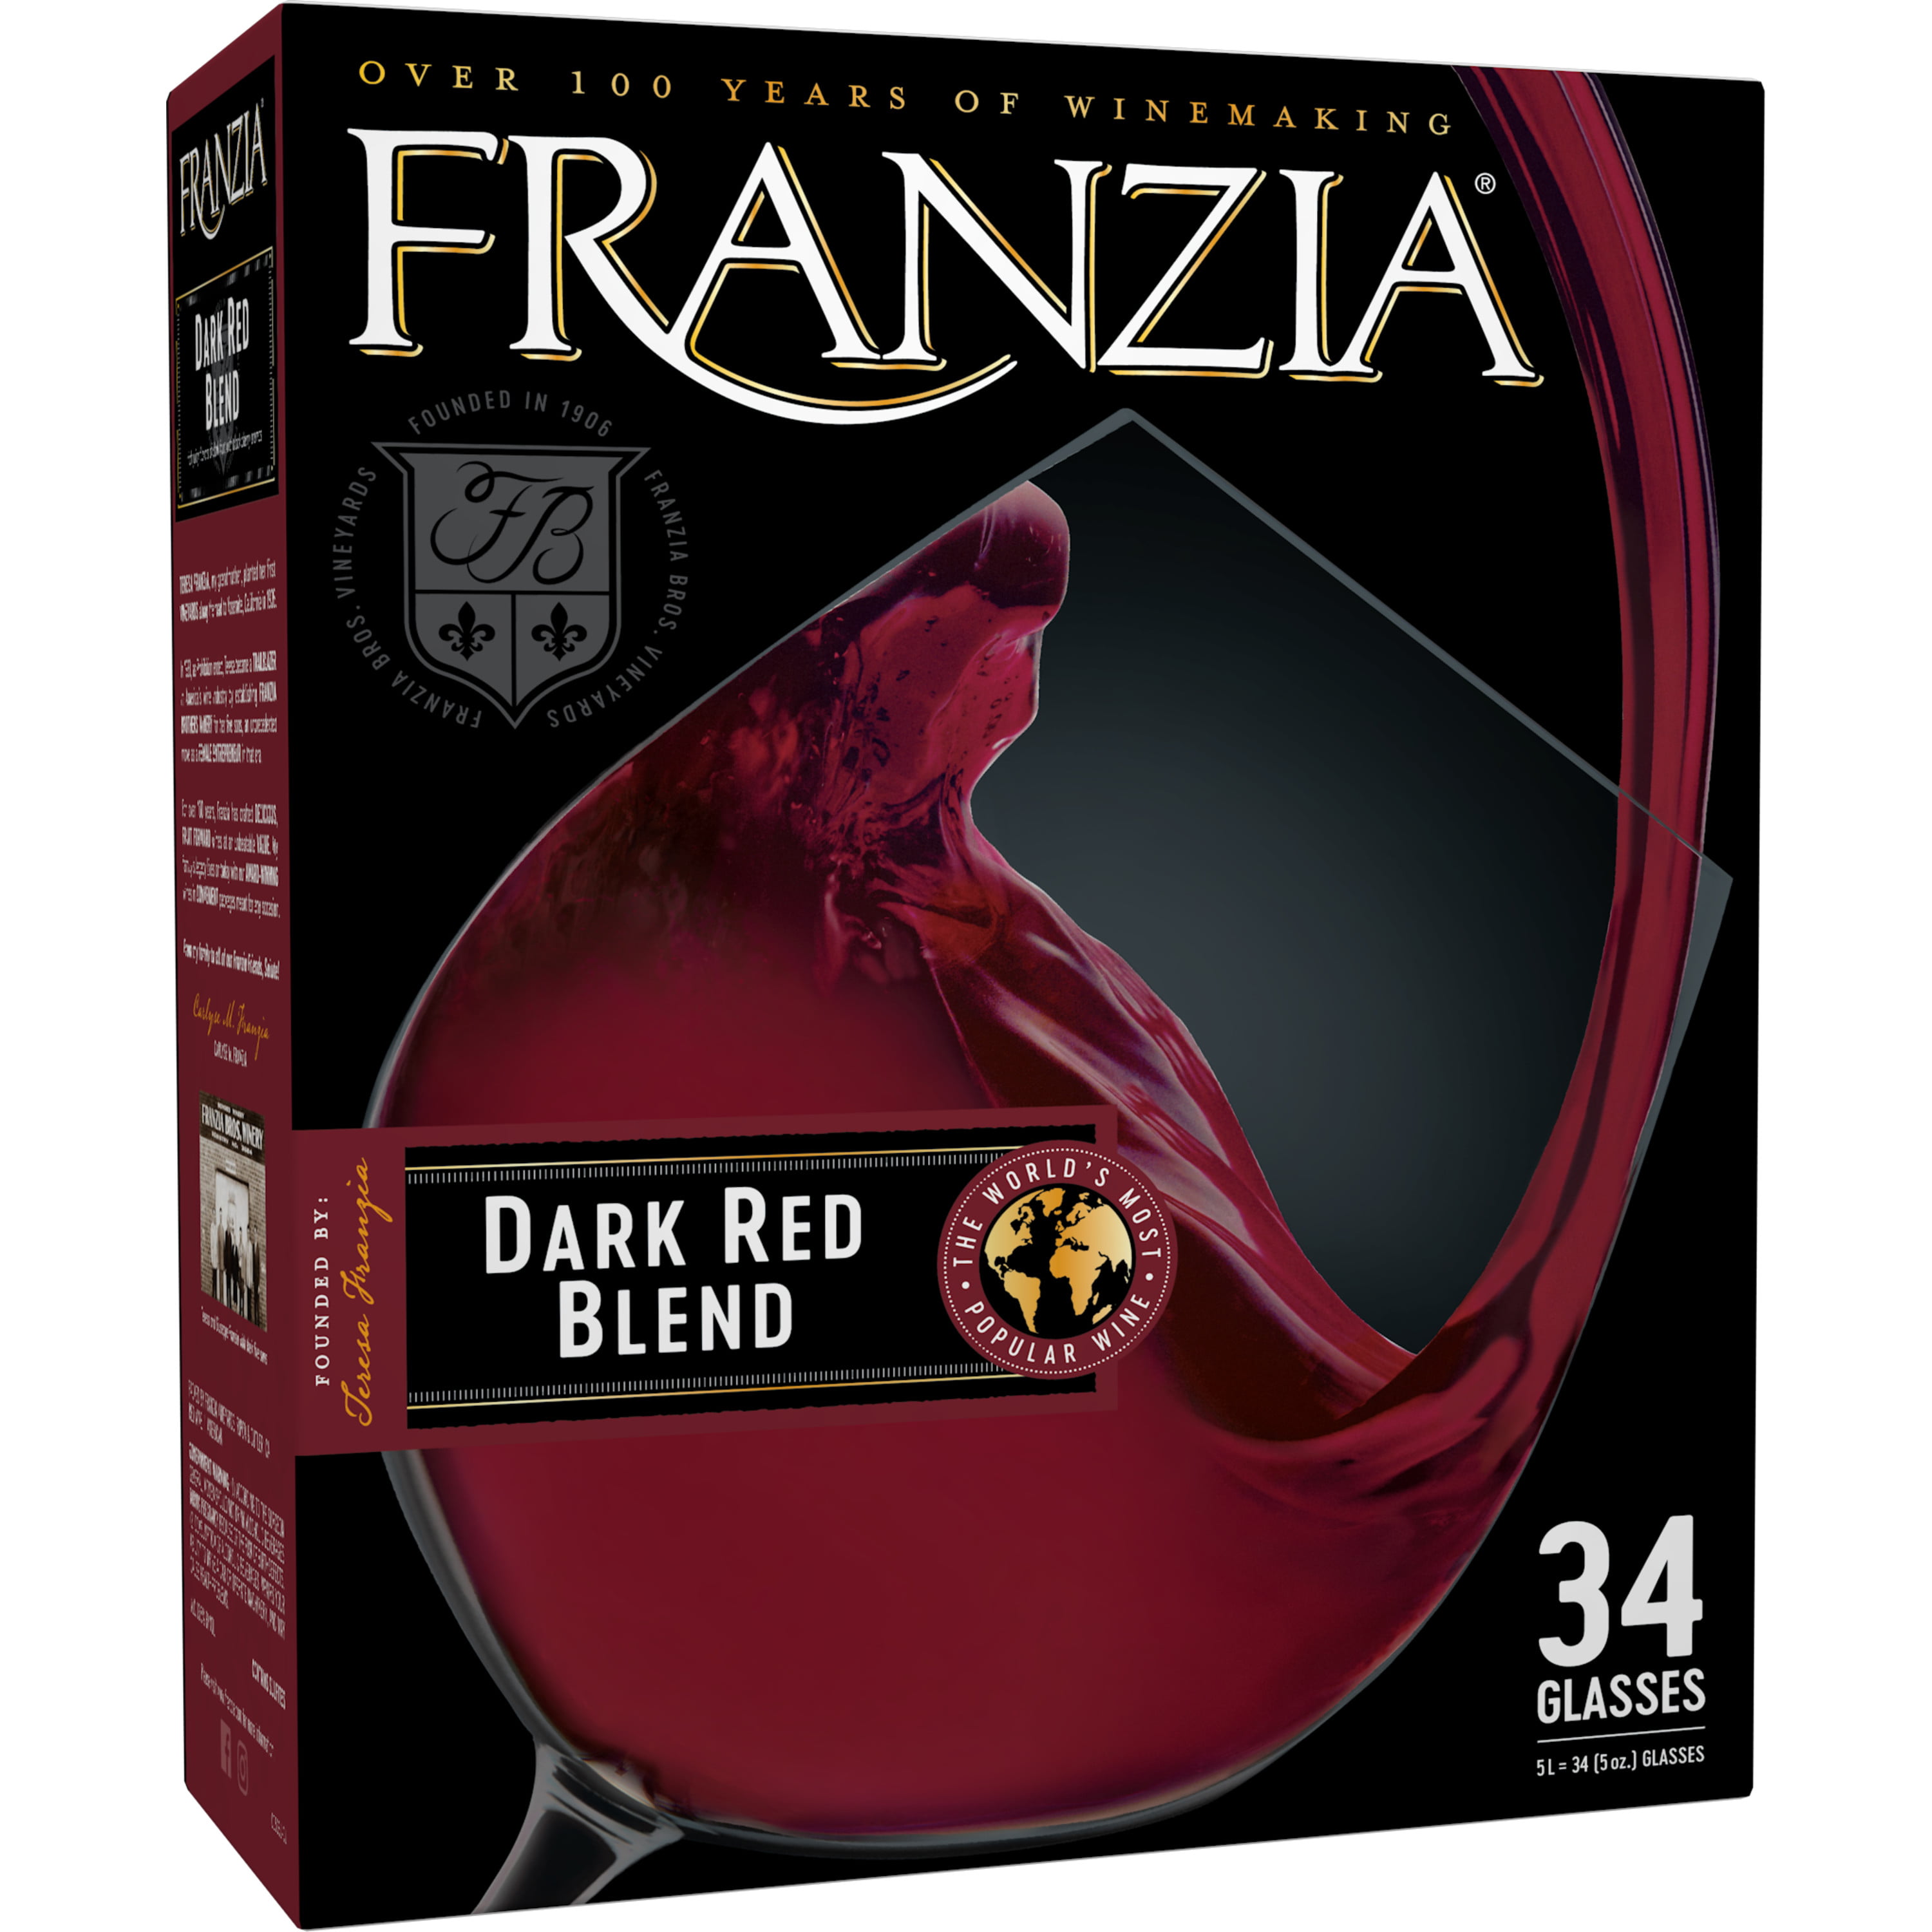 franzia-dark-red-red-wine-5-liter-walmart